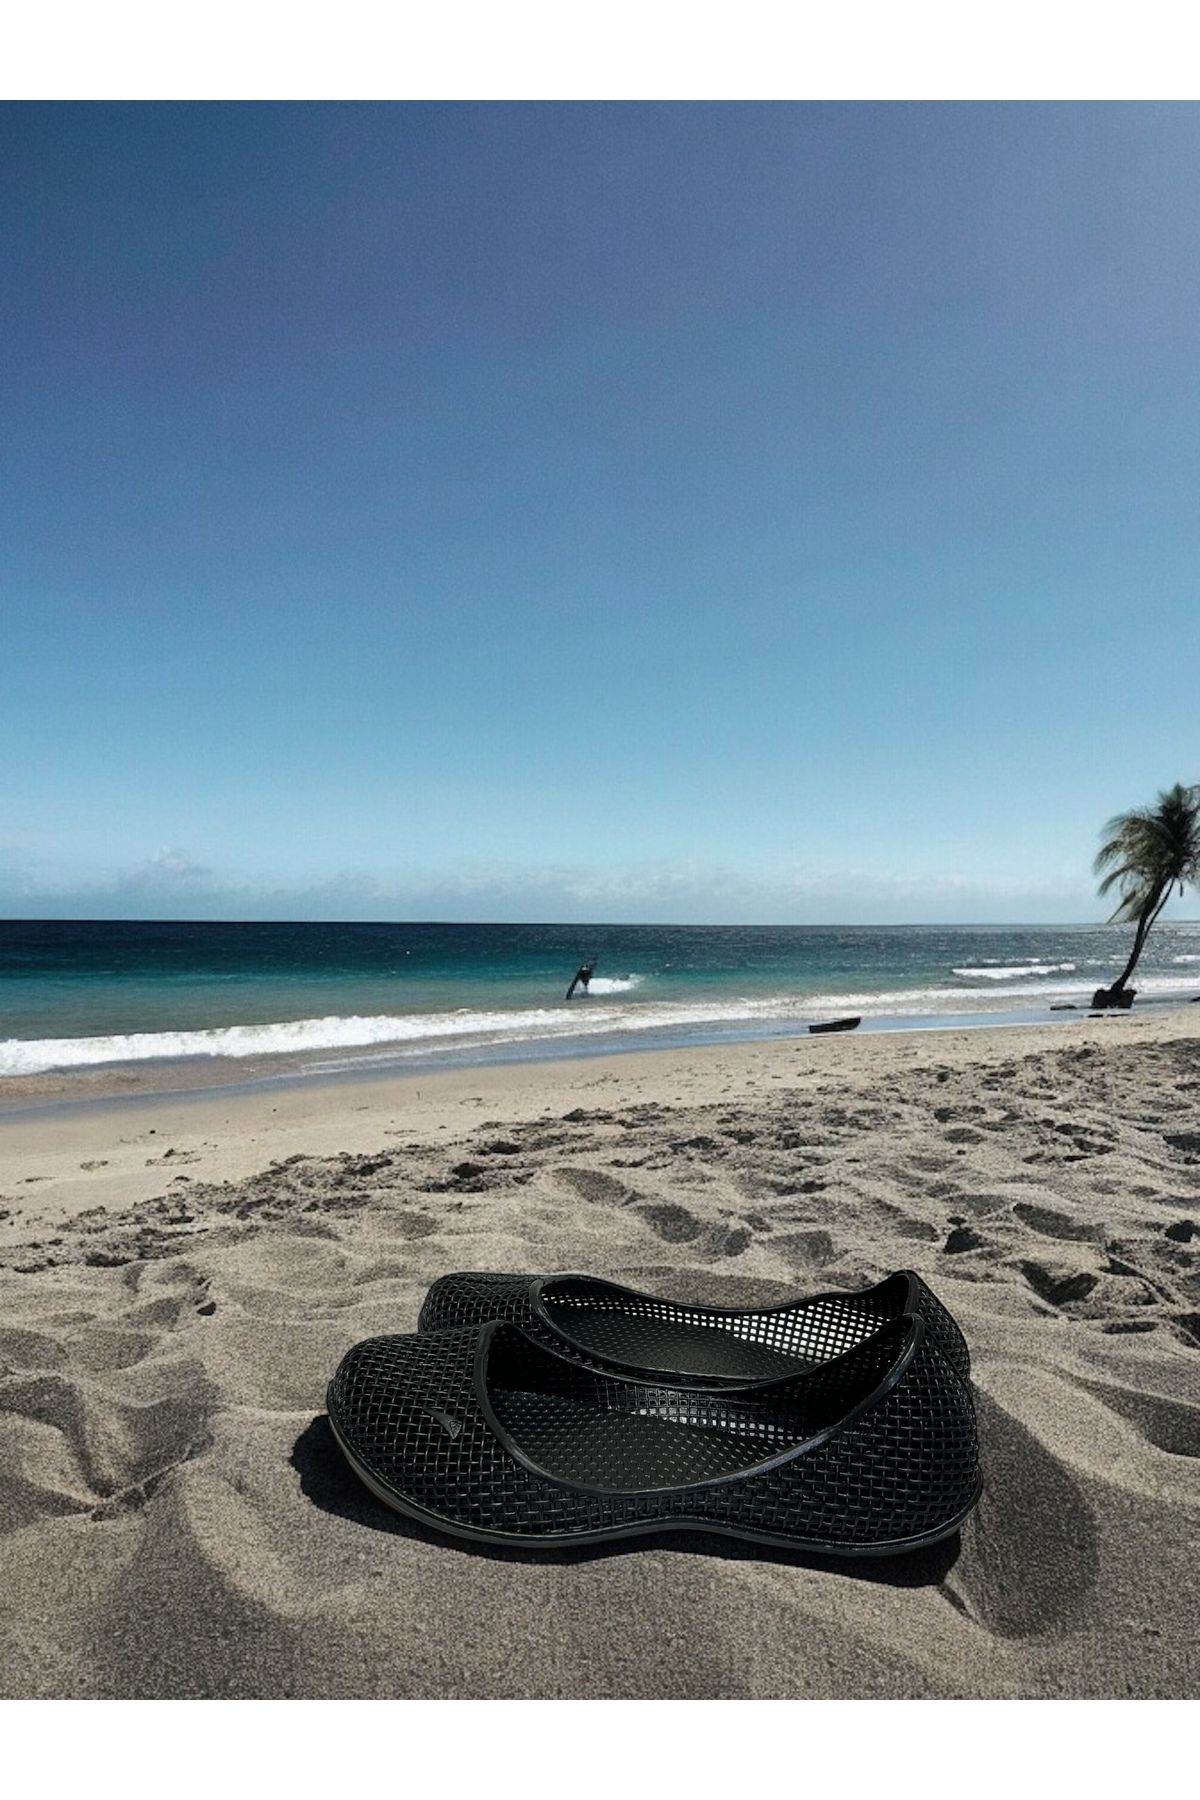 inox Kadın Deniz Ayakkabısı, Kaydırmaz Kaymaz Taban, plaj, spa, havuz